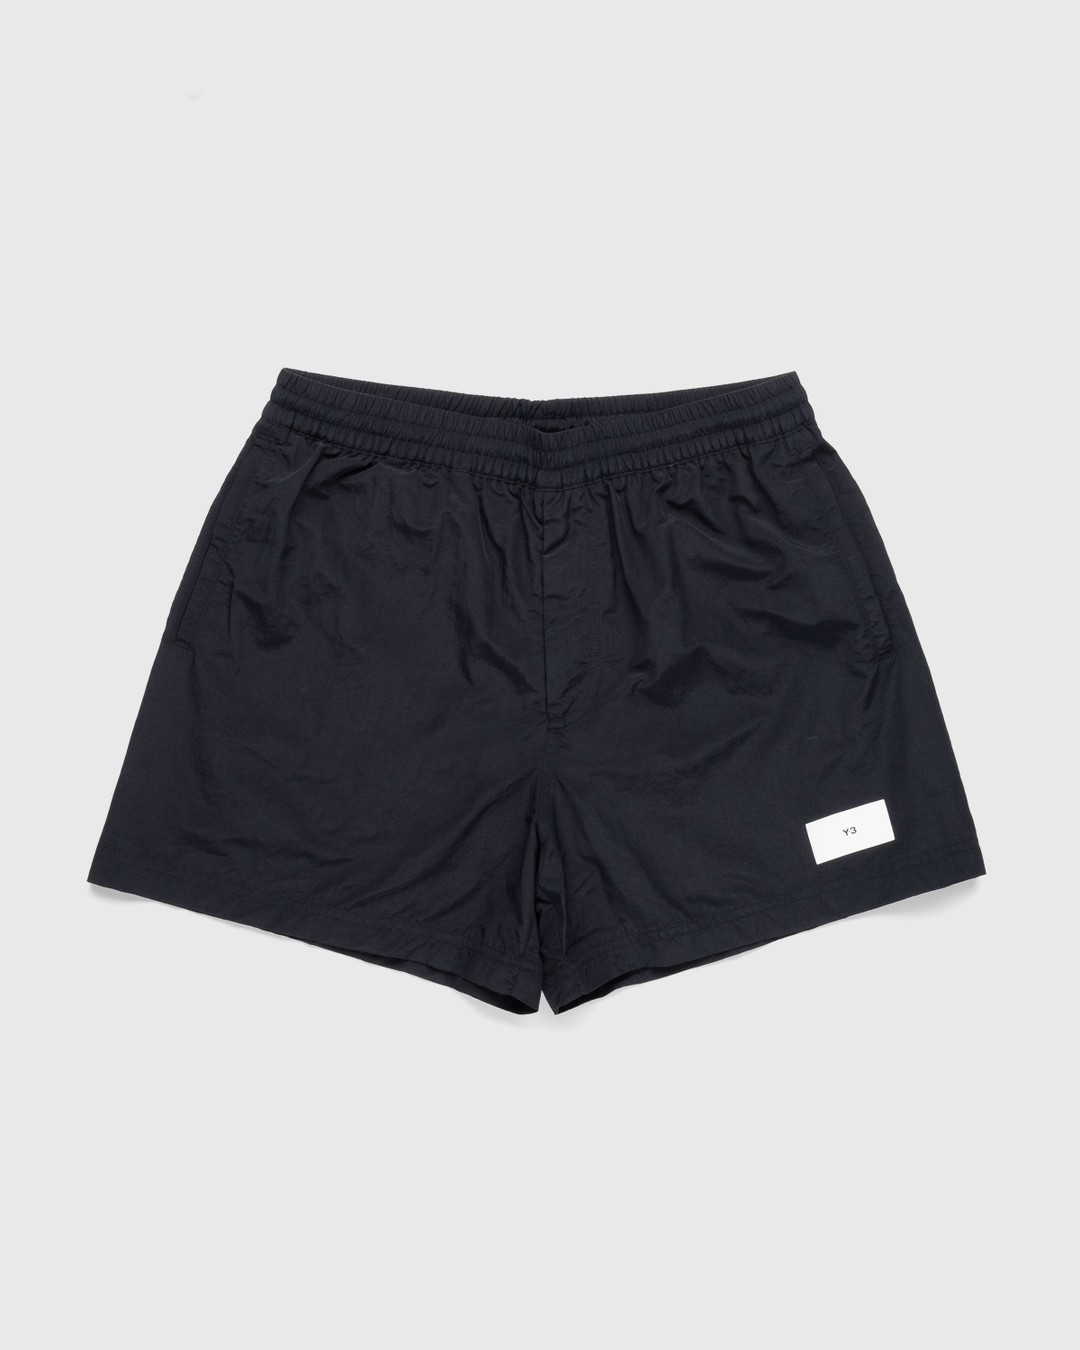 Y-3 – Swim Shorts Black | Highsnobiety Shop